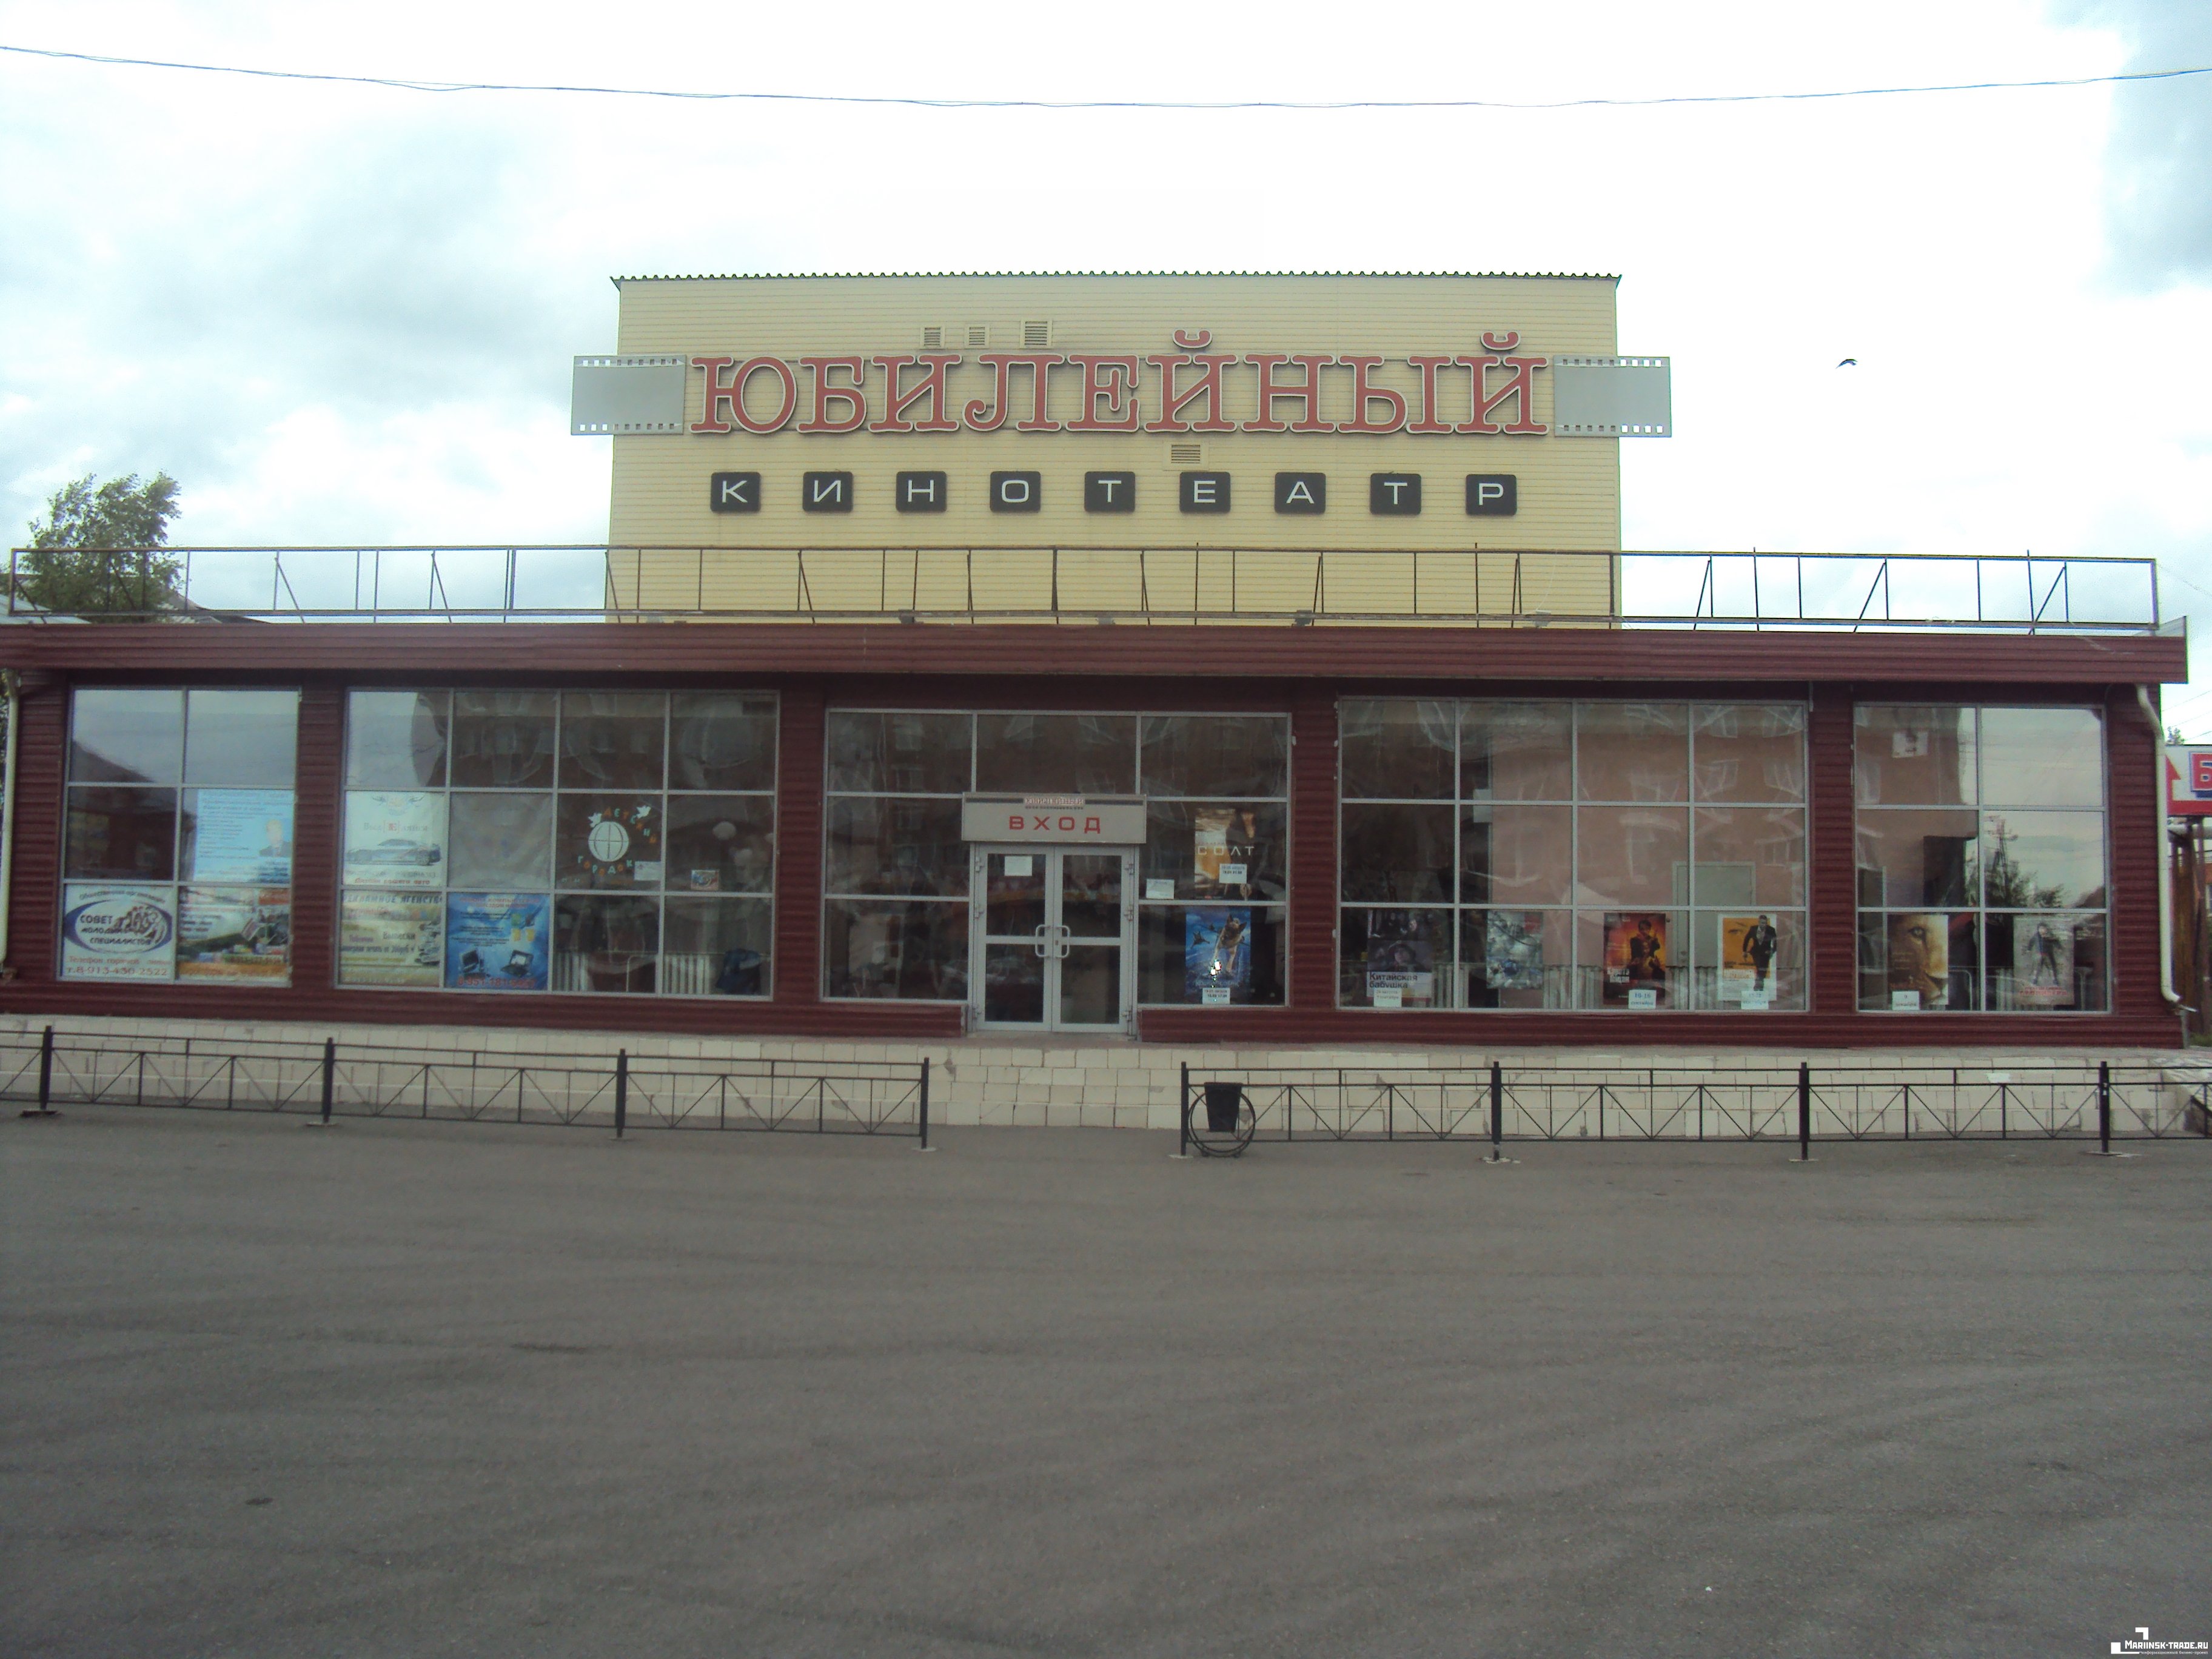 Мариинск кинотеатр юбилейный афиша